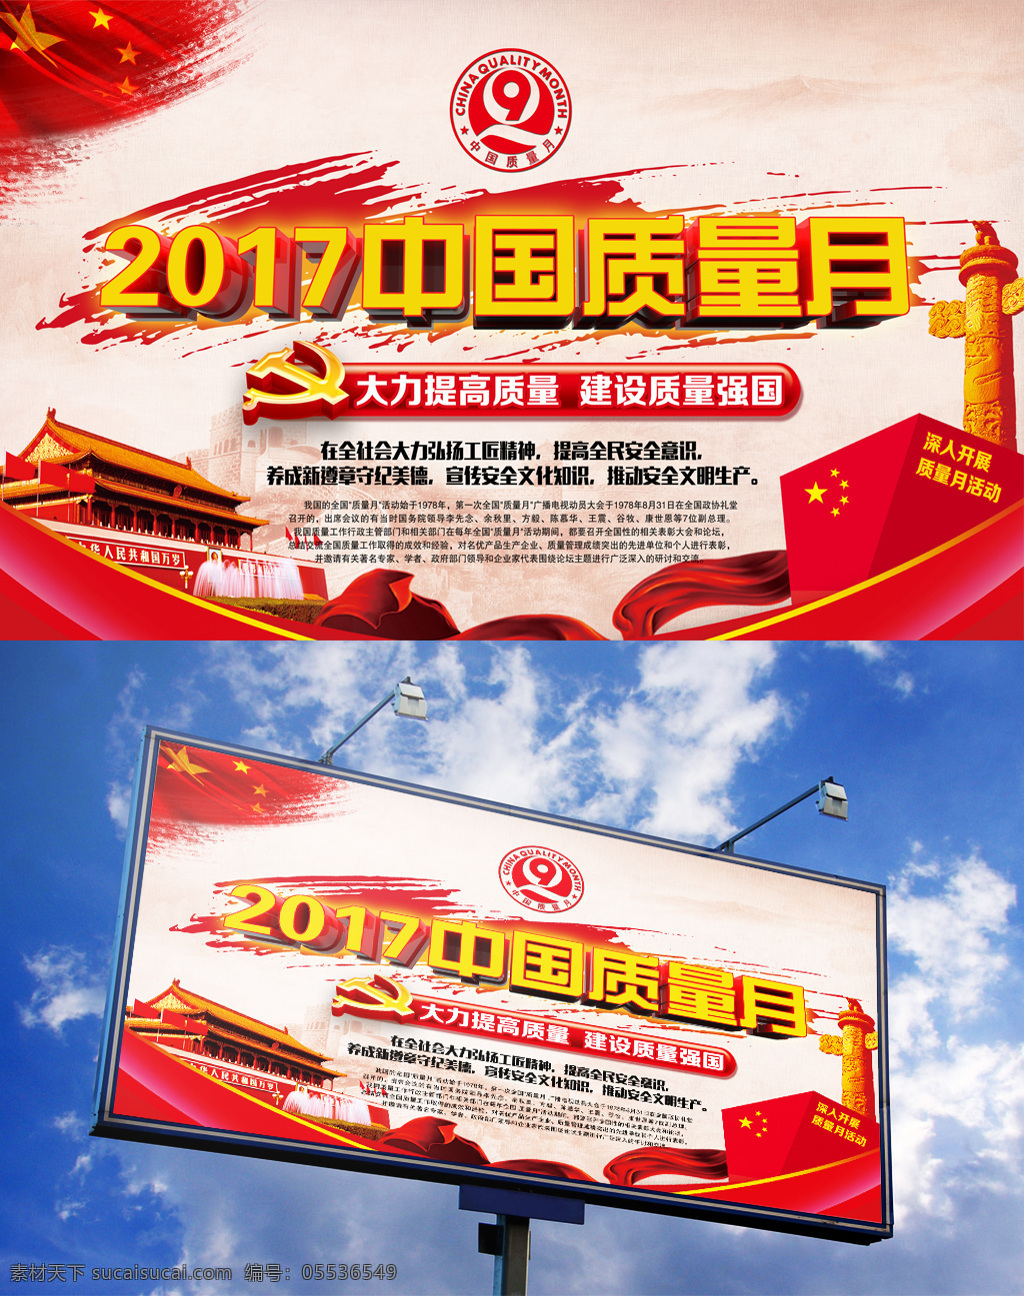 2017 中国 质量月 3d 渲染 海报 质量月主题 质量月宣传栏 质量月模版 质量月宣传 质量月海报 质量月标志 党建海报 质量安全 立体字